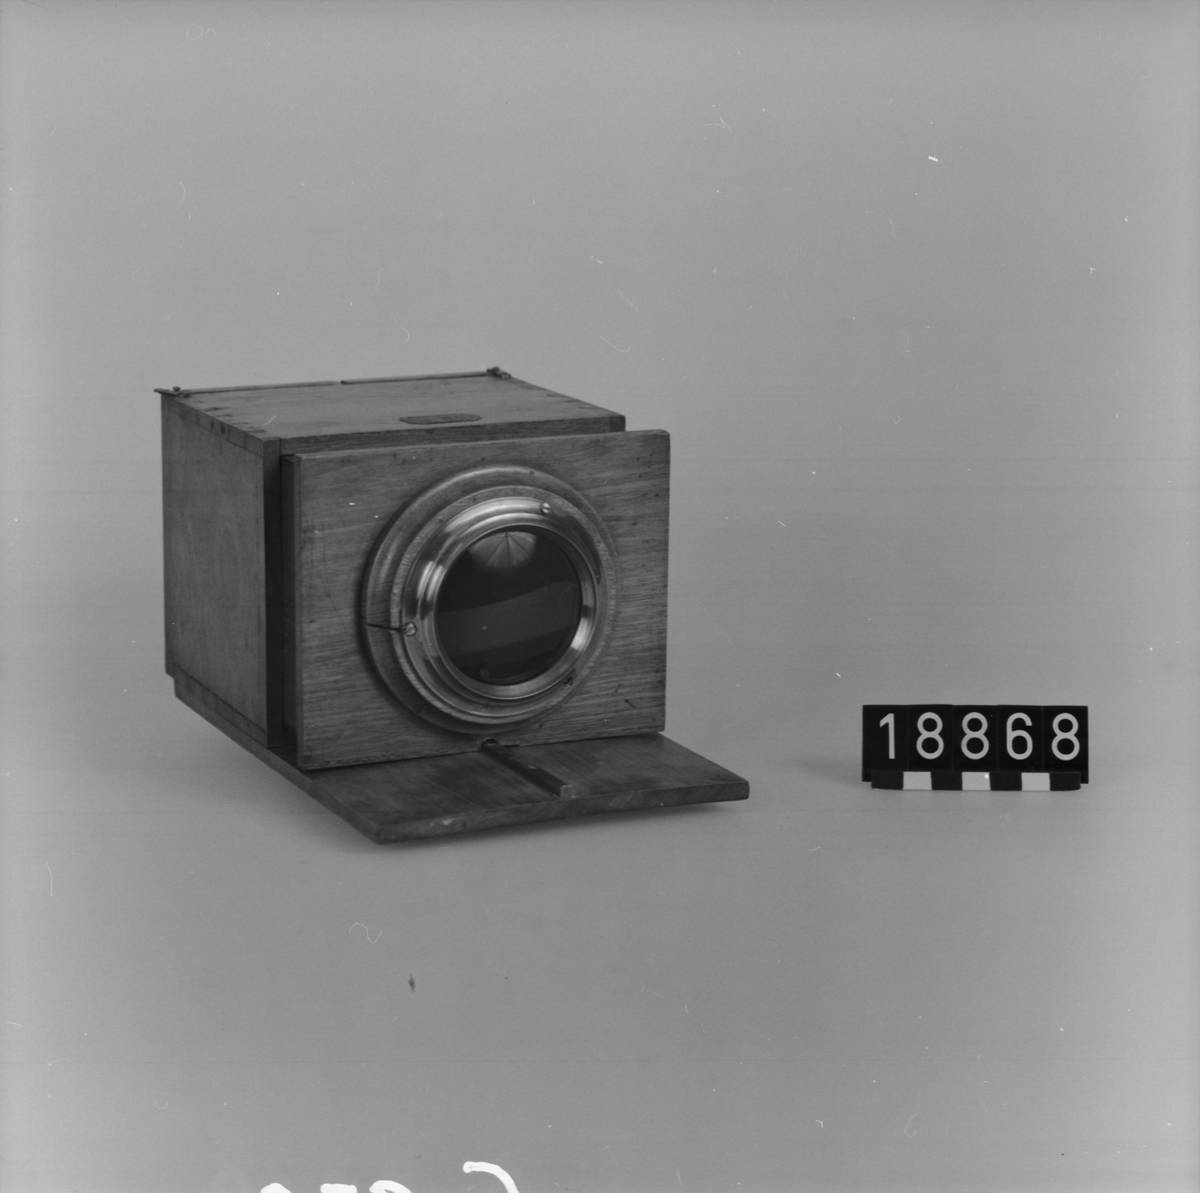 Daguerreotypiapparat av trä. Skjutlådemodell avsedd att användas med stativ. Avståndsinställning med skala och visirskiva. Kameran saknar bländare och slutare. Exponering görs med hjälp av ett objektivlock. Tillbehör: En kassett av trä och visirskiva med spegel.